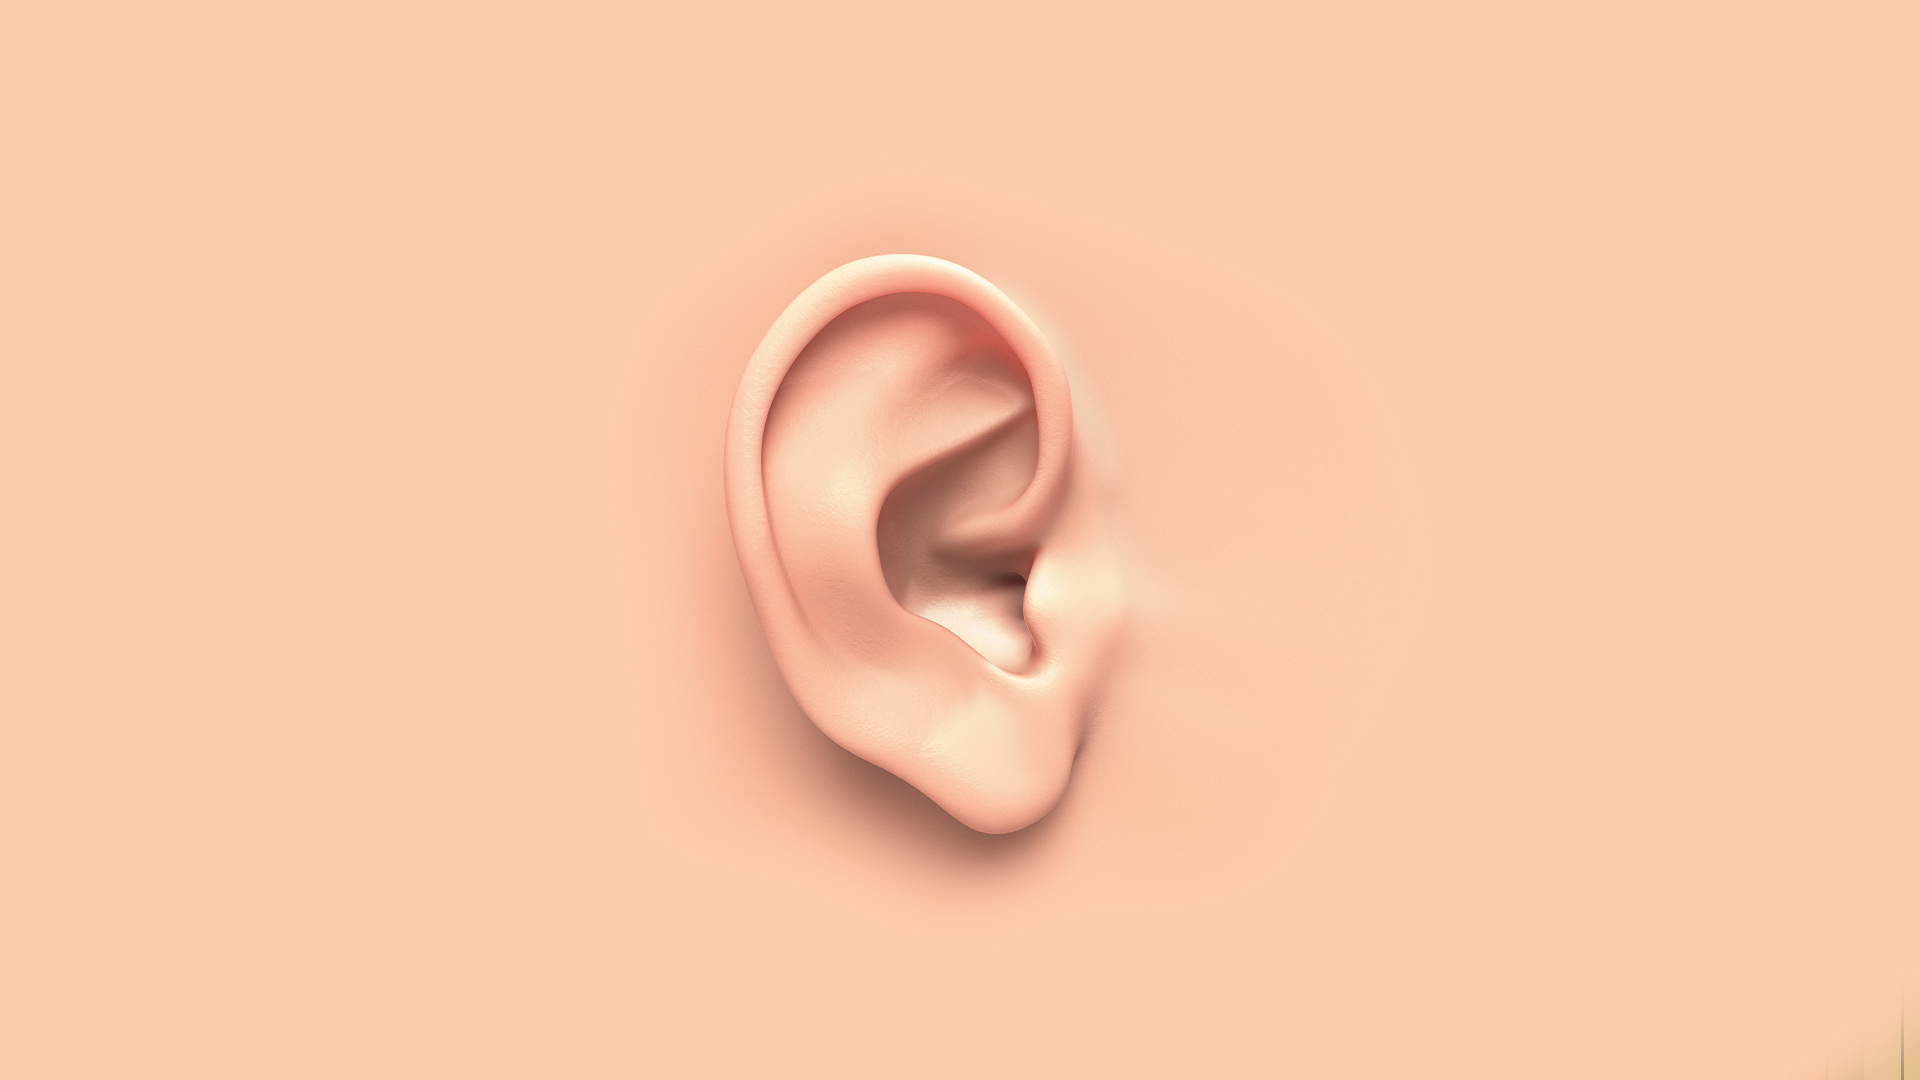 Ear